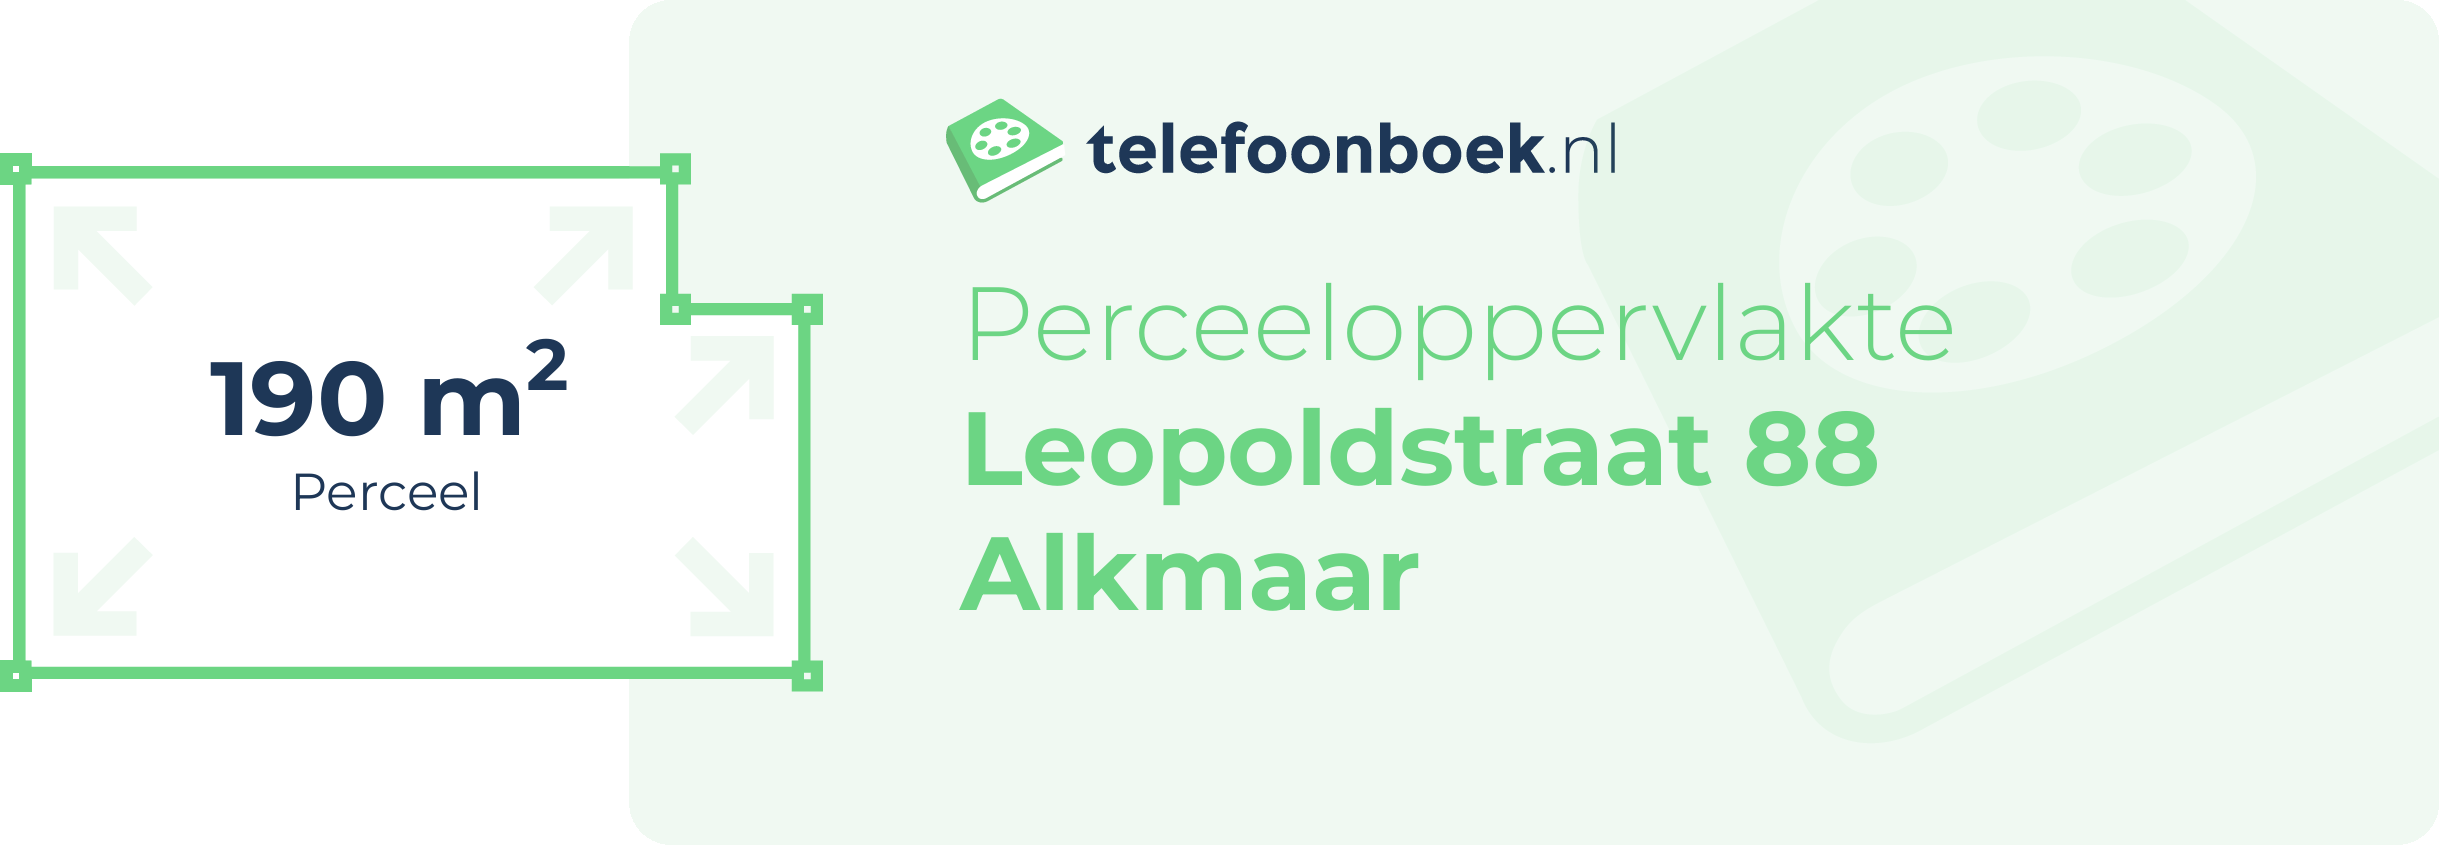 Perceeloppervlakte Leopoldstraat 88 Alkmaar